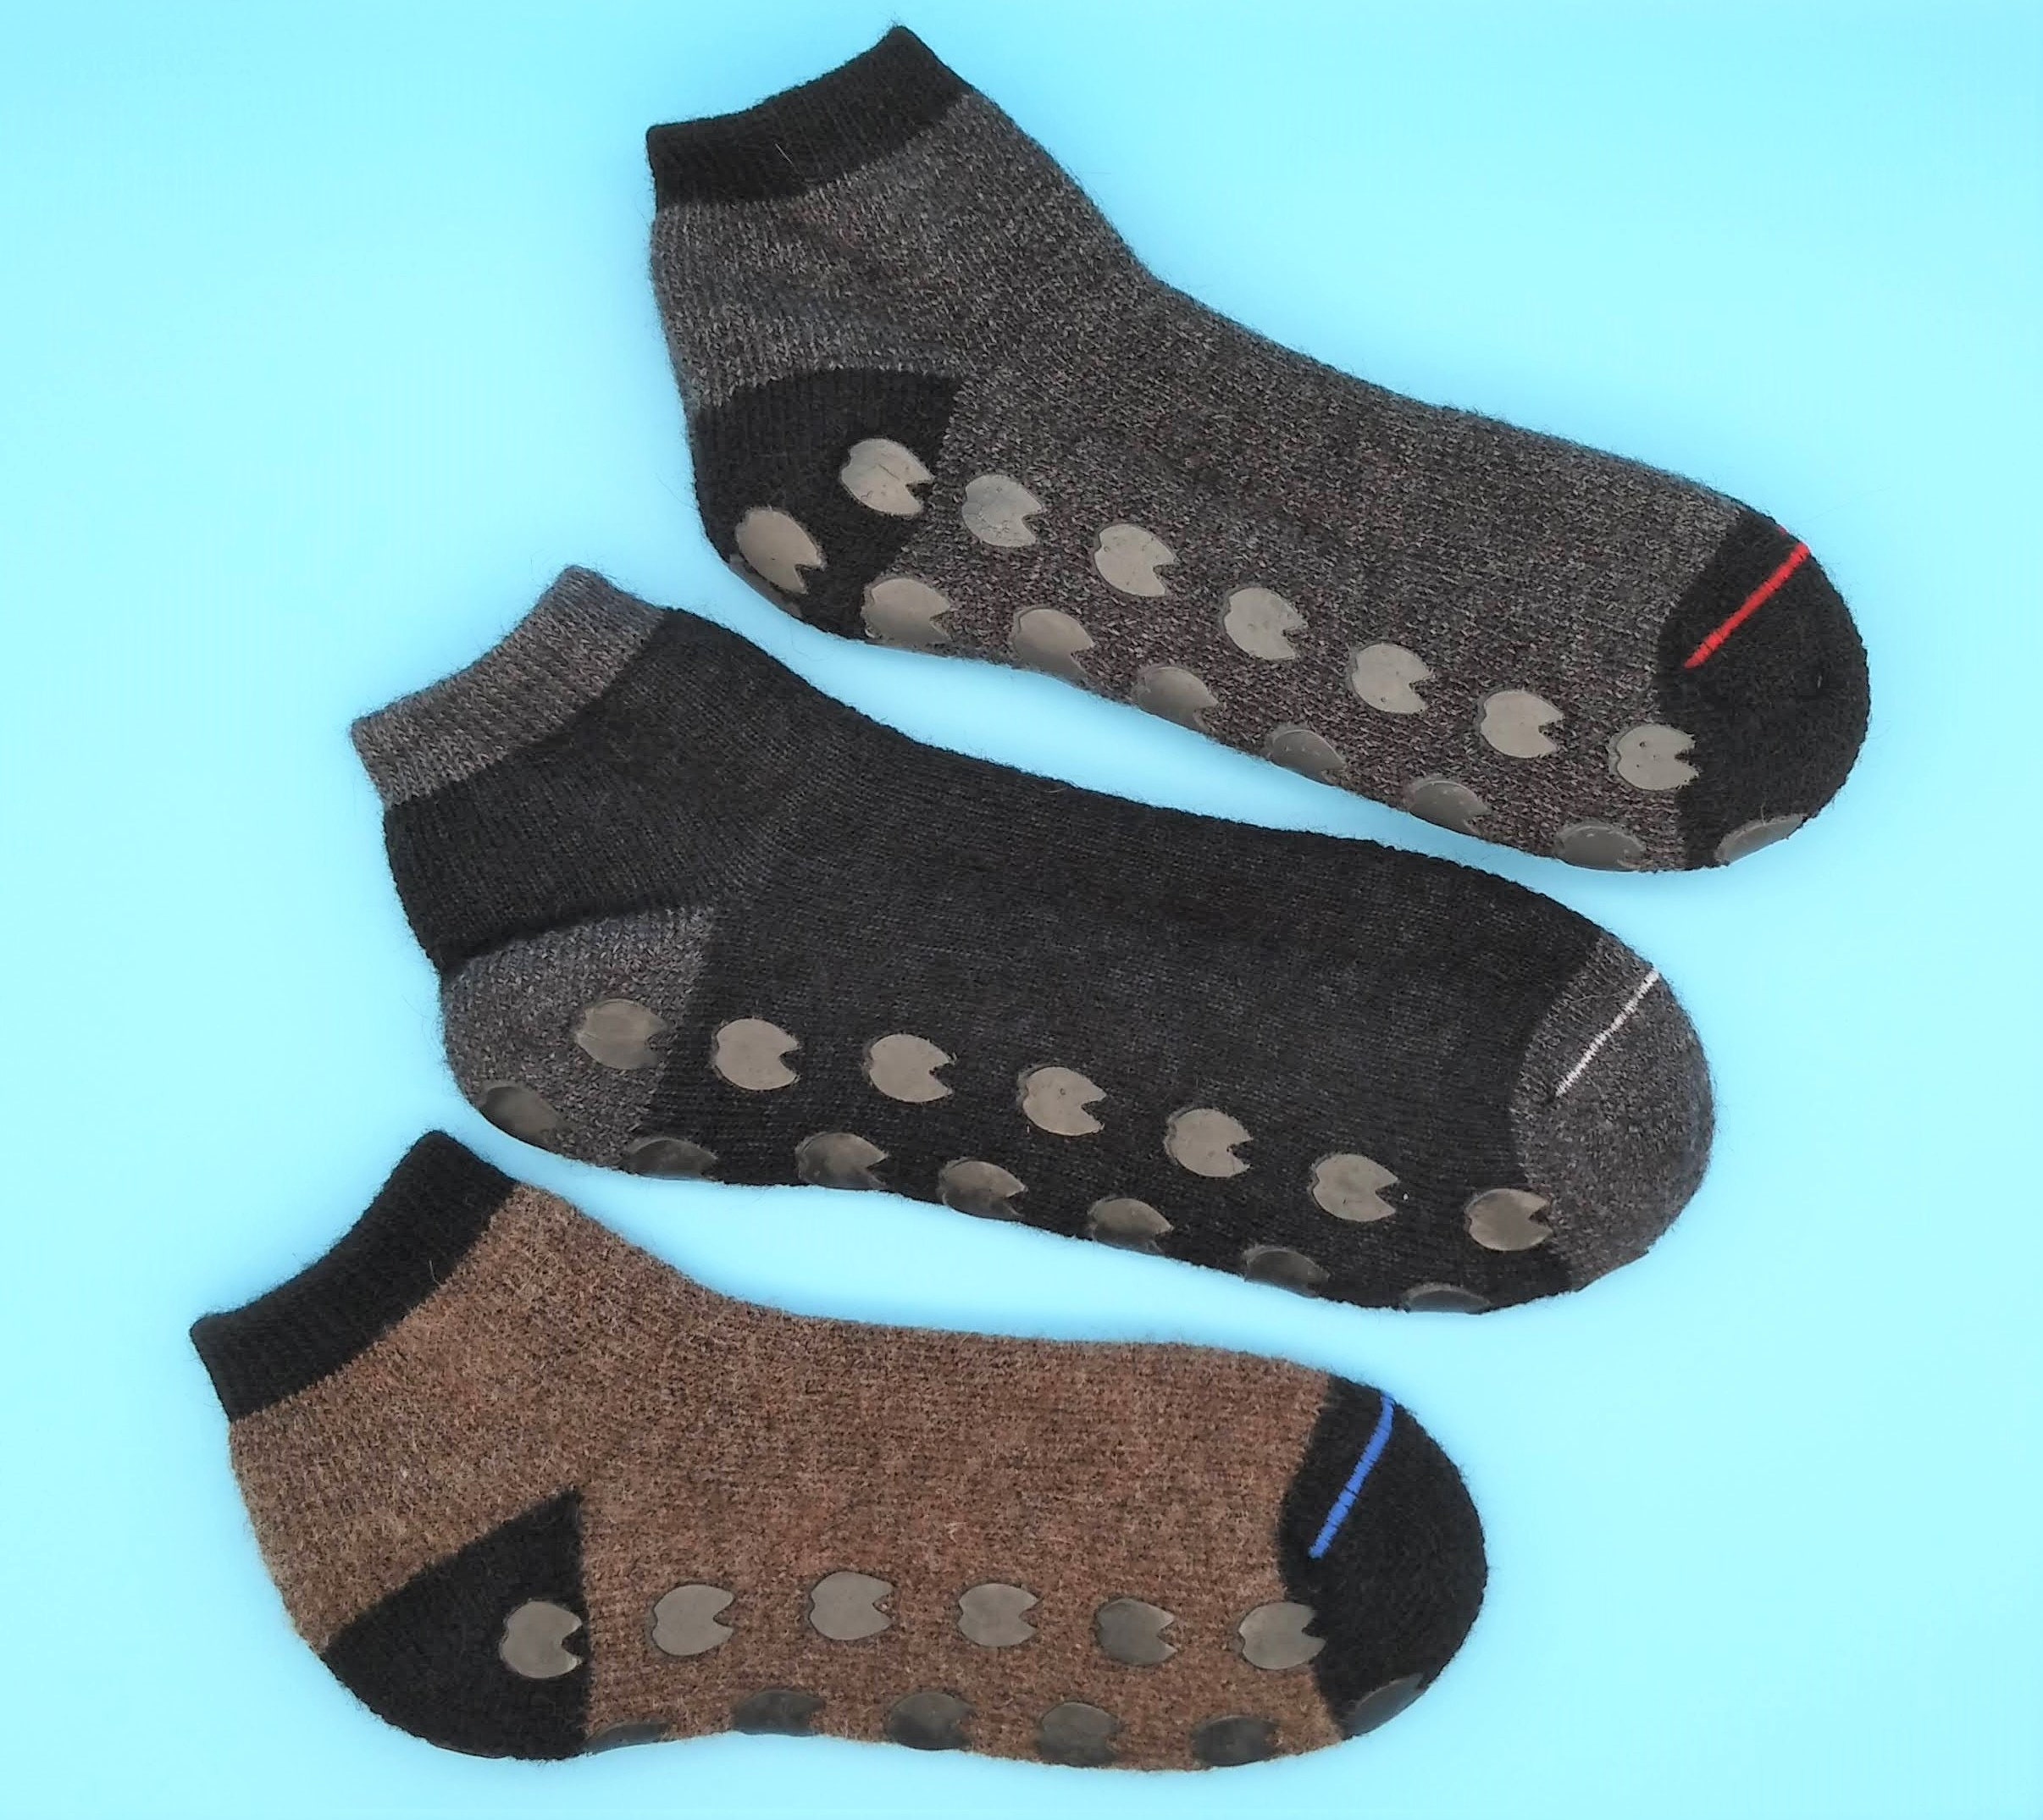 Gripper Socks for Women 